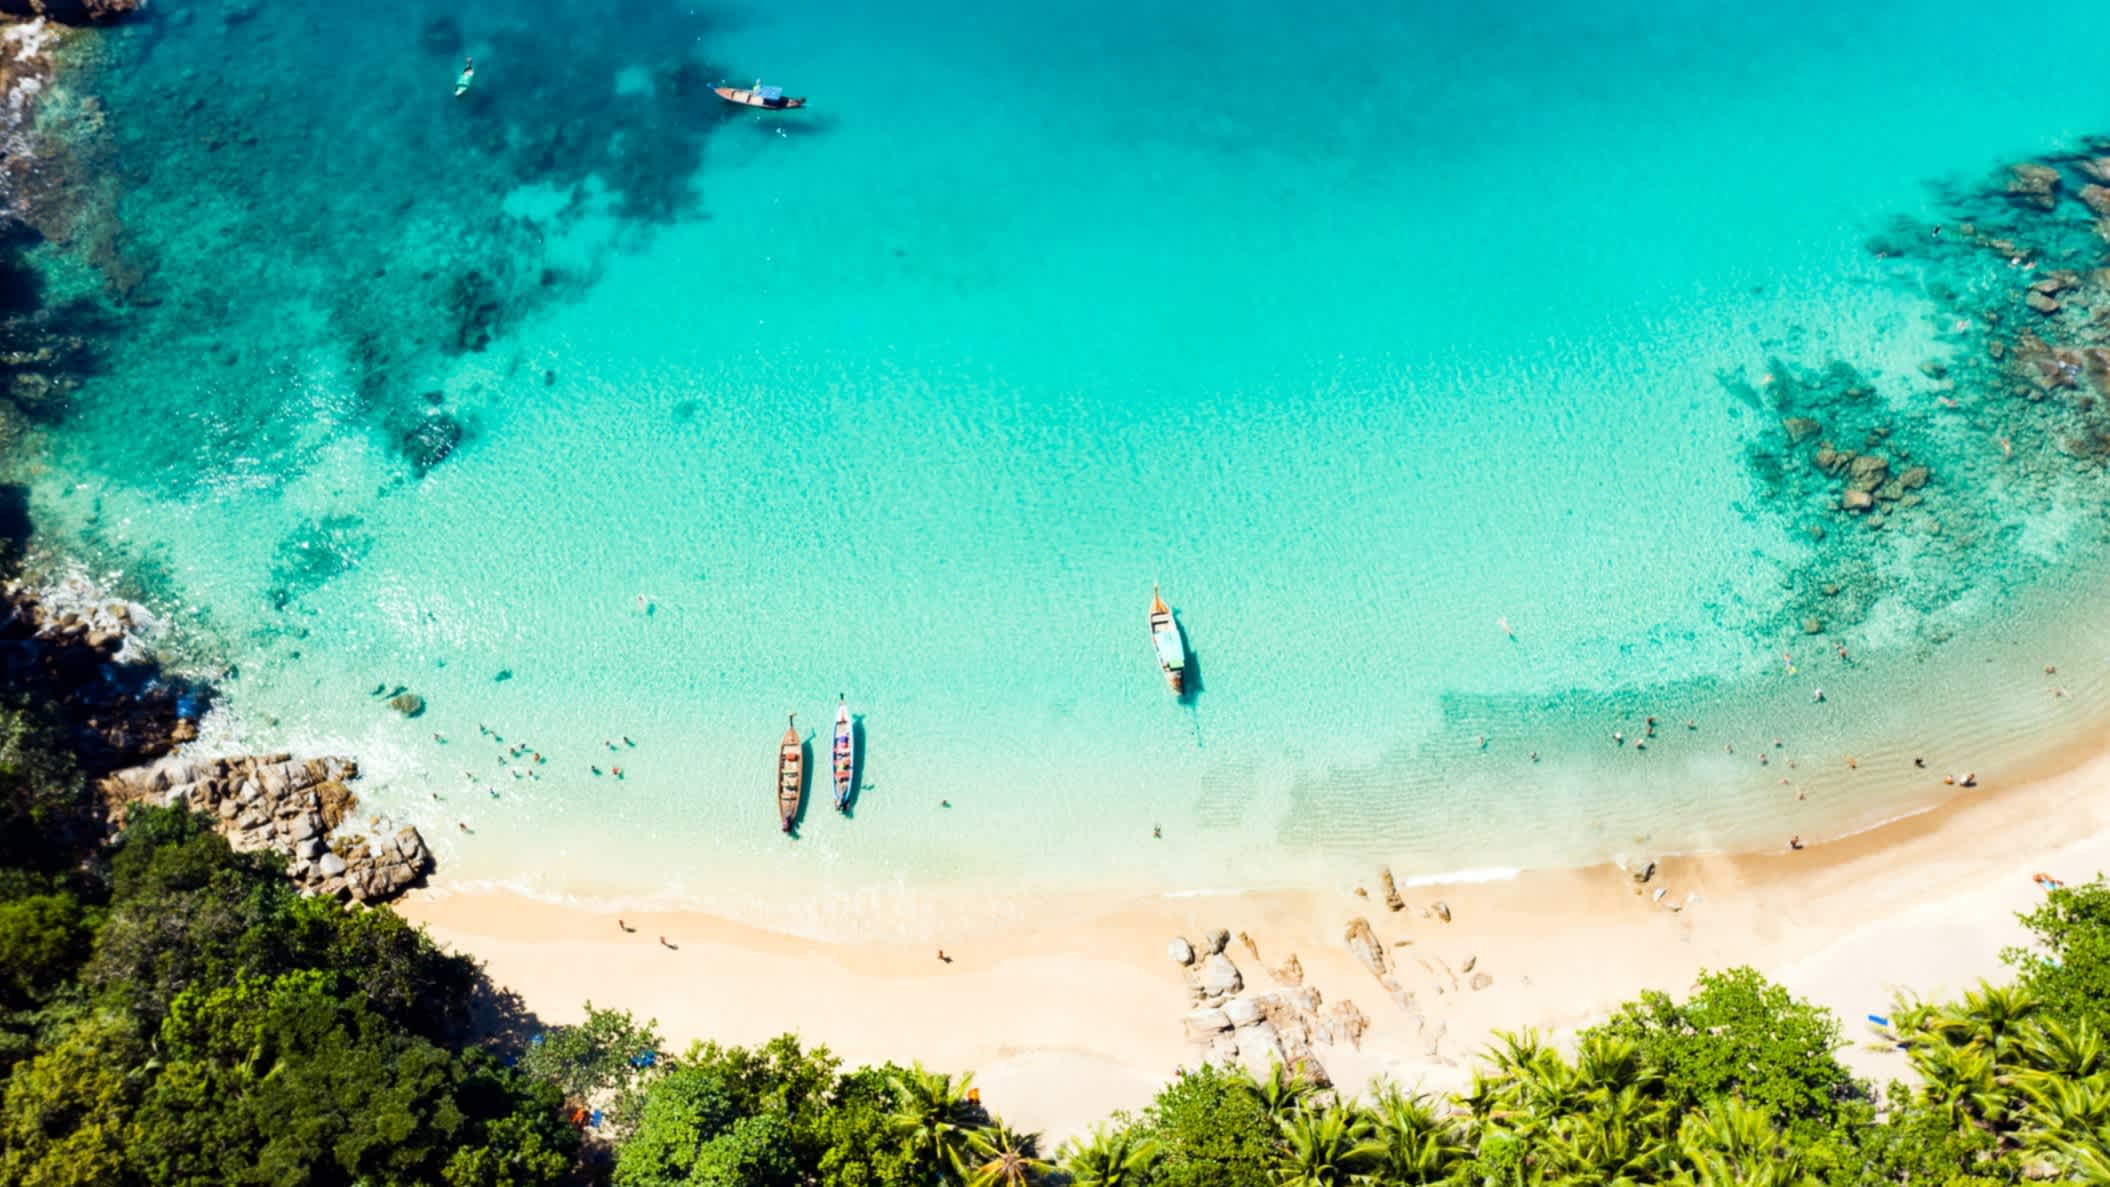 Vue aérienne de Banana Beach, avec des bateaux et une mer turquoise, à Phuket en Thaïlande.